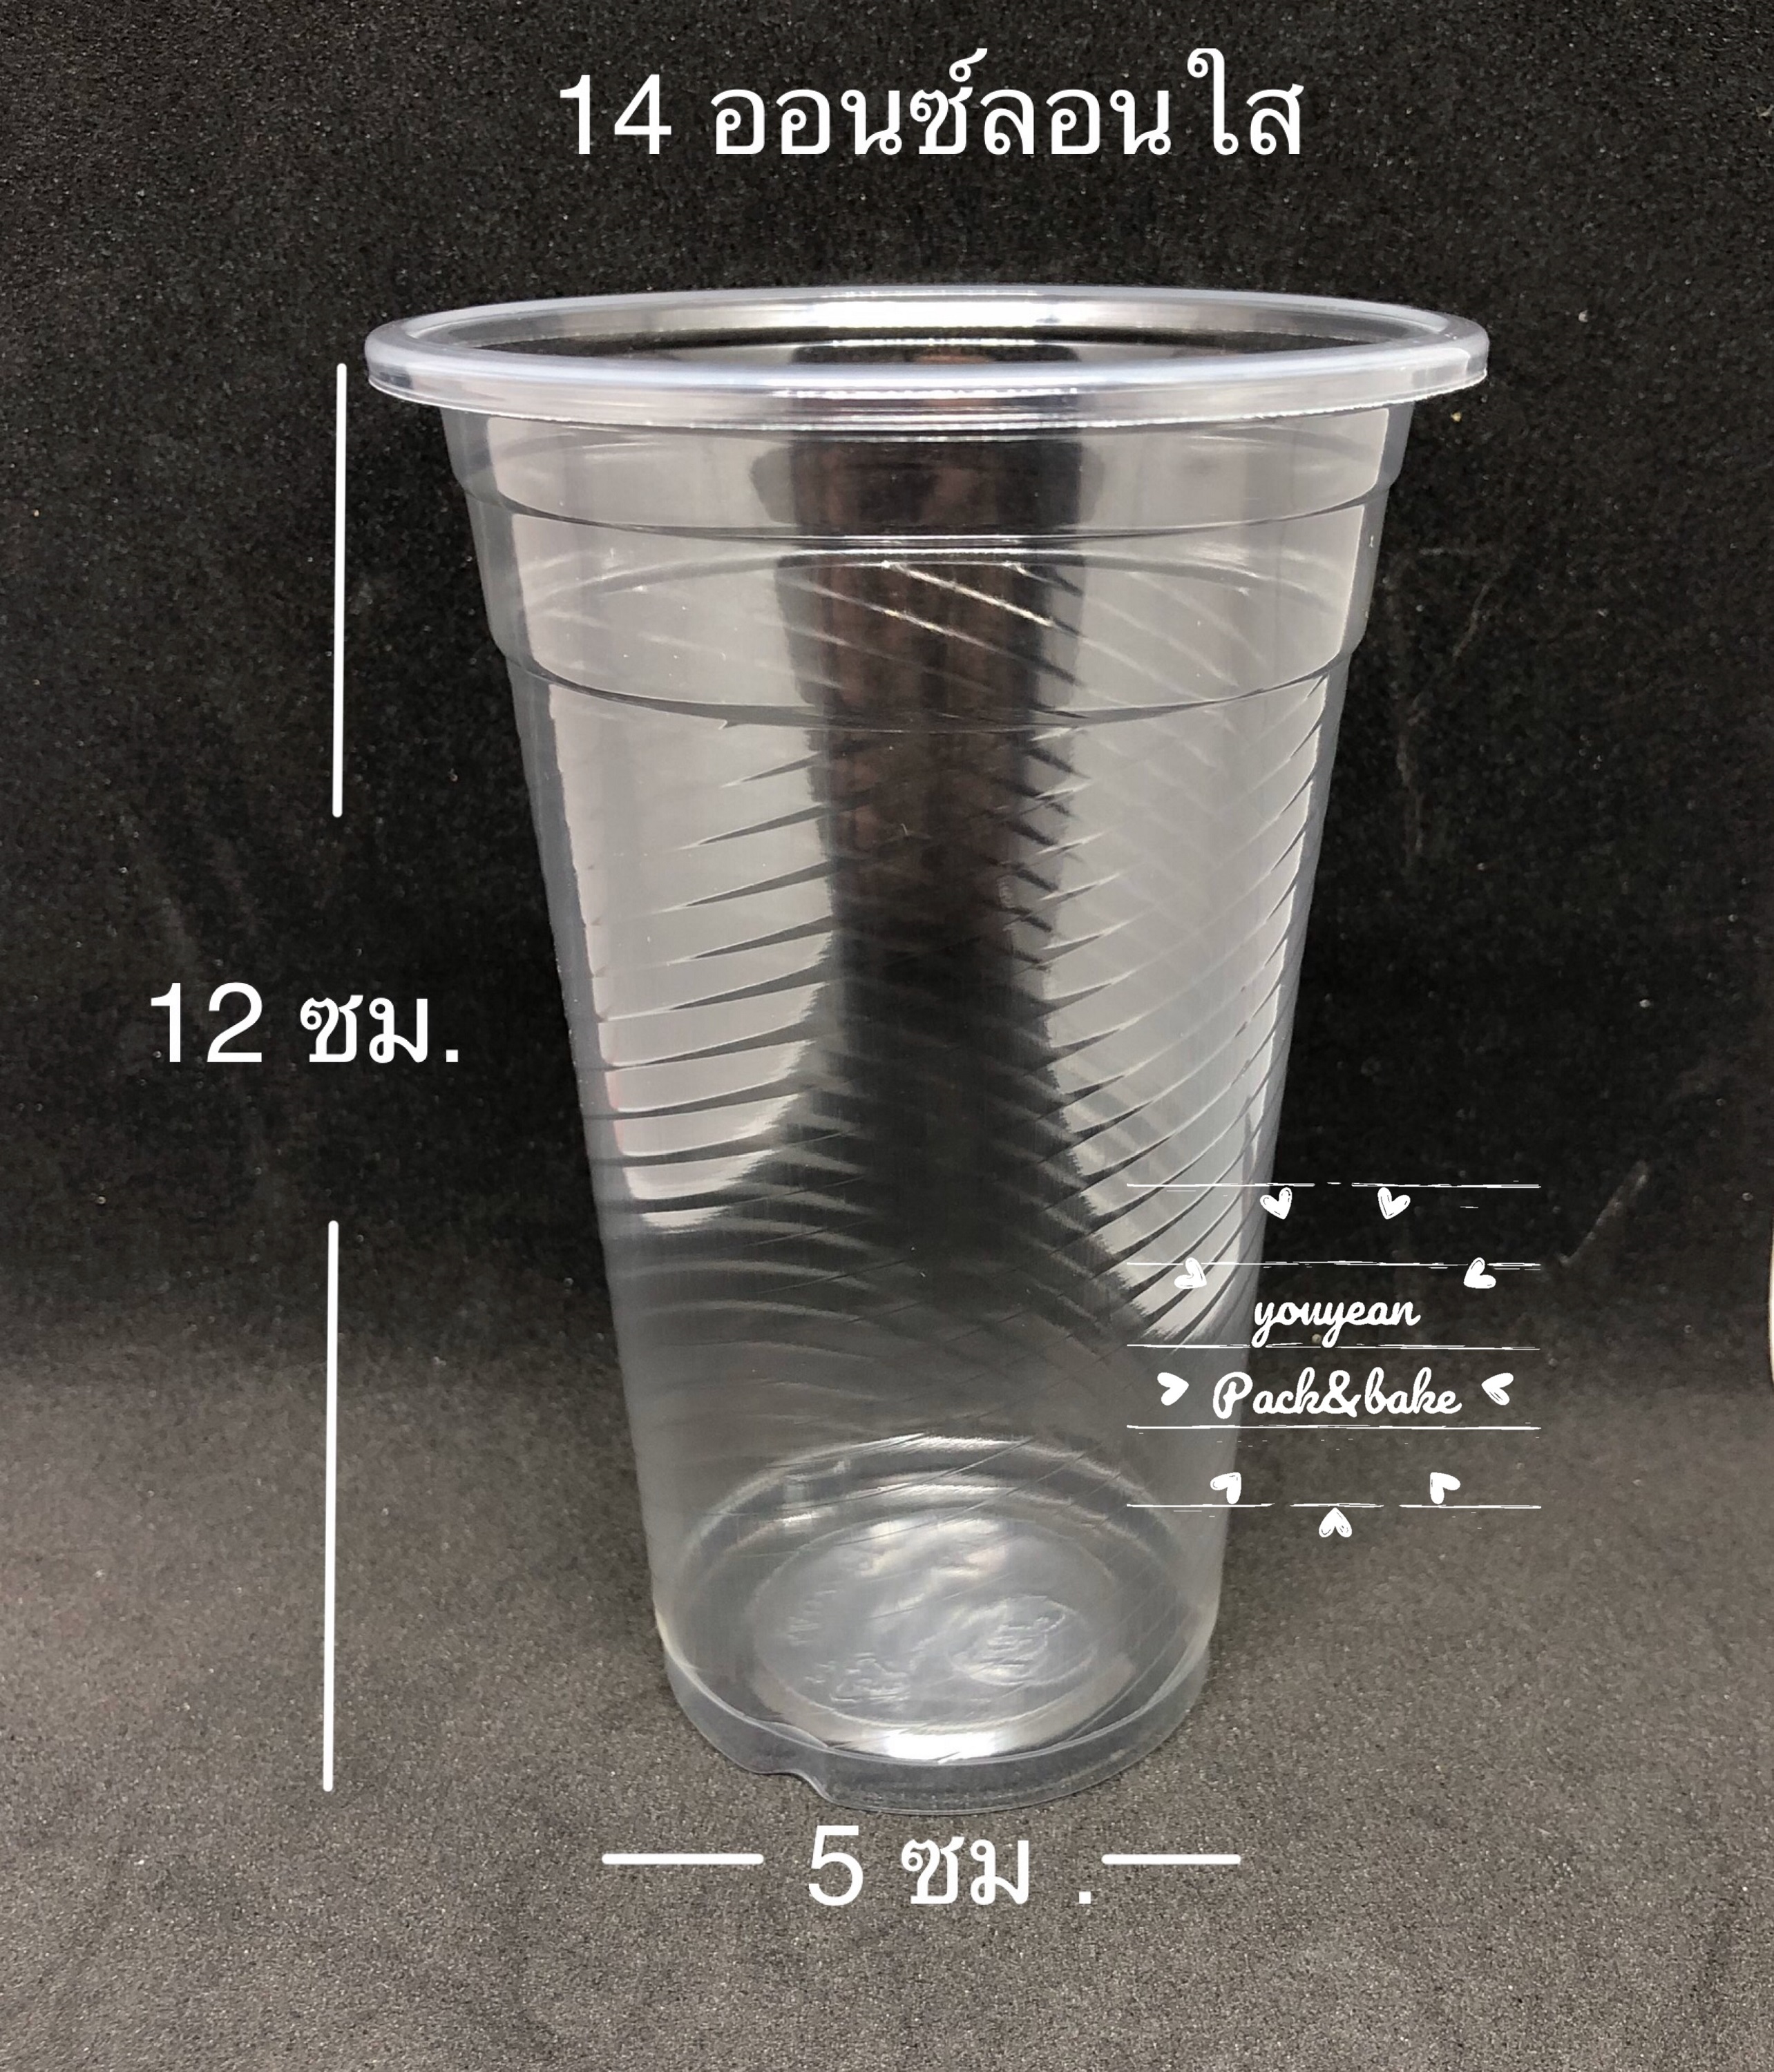 แก้ว 14 ออนซ์ใสและลาย หรือ แก้วขนาด 390 cc. จำนวน 100 ใบ/แถว